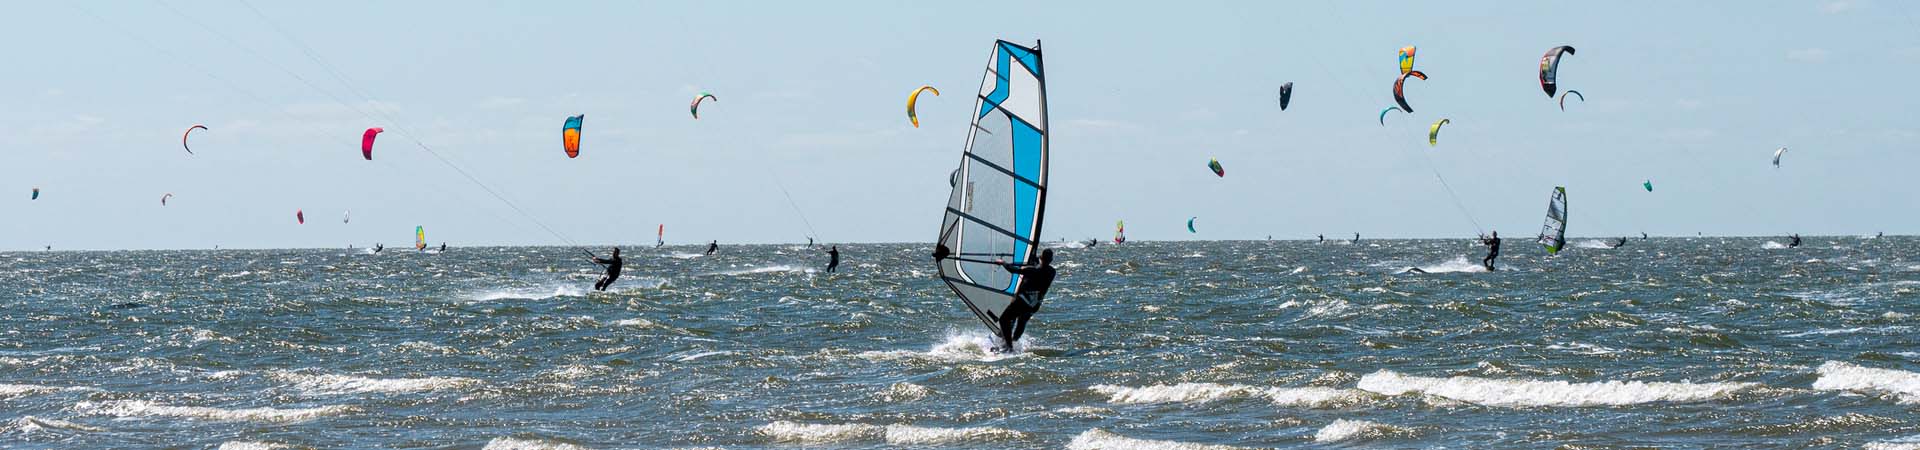 Wassersport – Wind- & Kitesurfer auf dem Meer